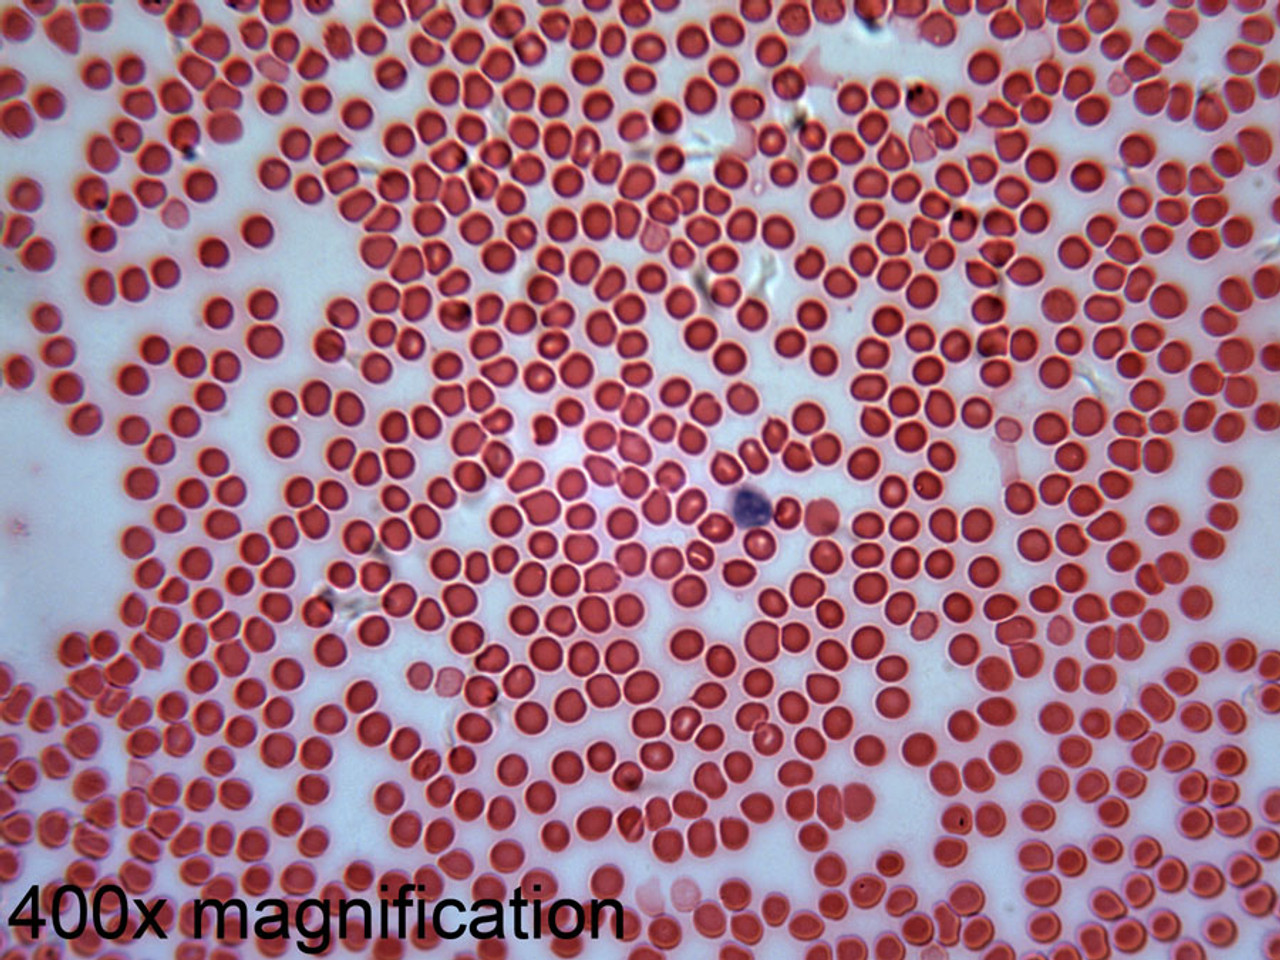 Кровь 1 200. Микропрепарат крови под микроскопом. Микропрепарат крови человека под микроскопом. Эритроциты в крови под микроскопом. Кр1в0 п13 микр1ск1п1м.